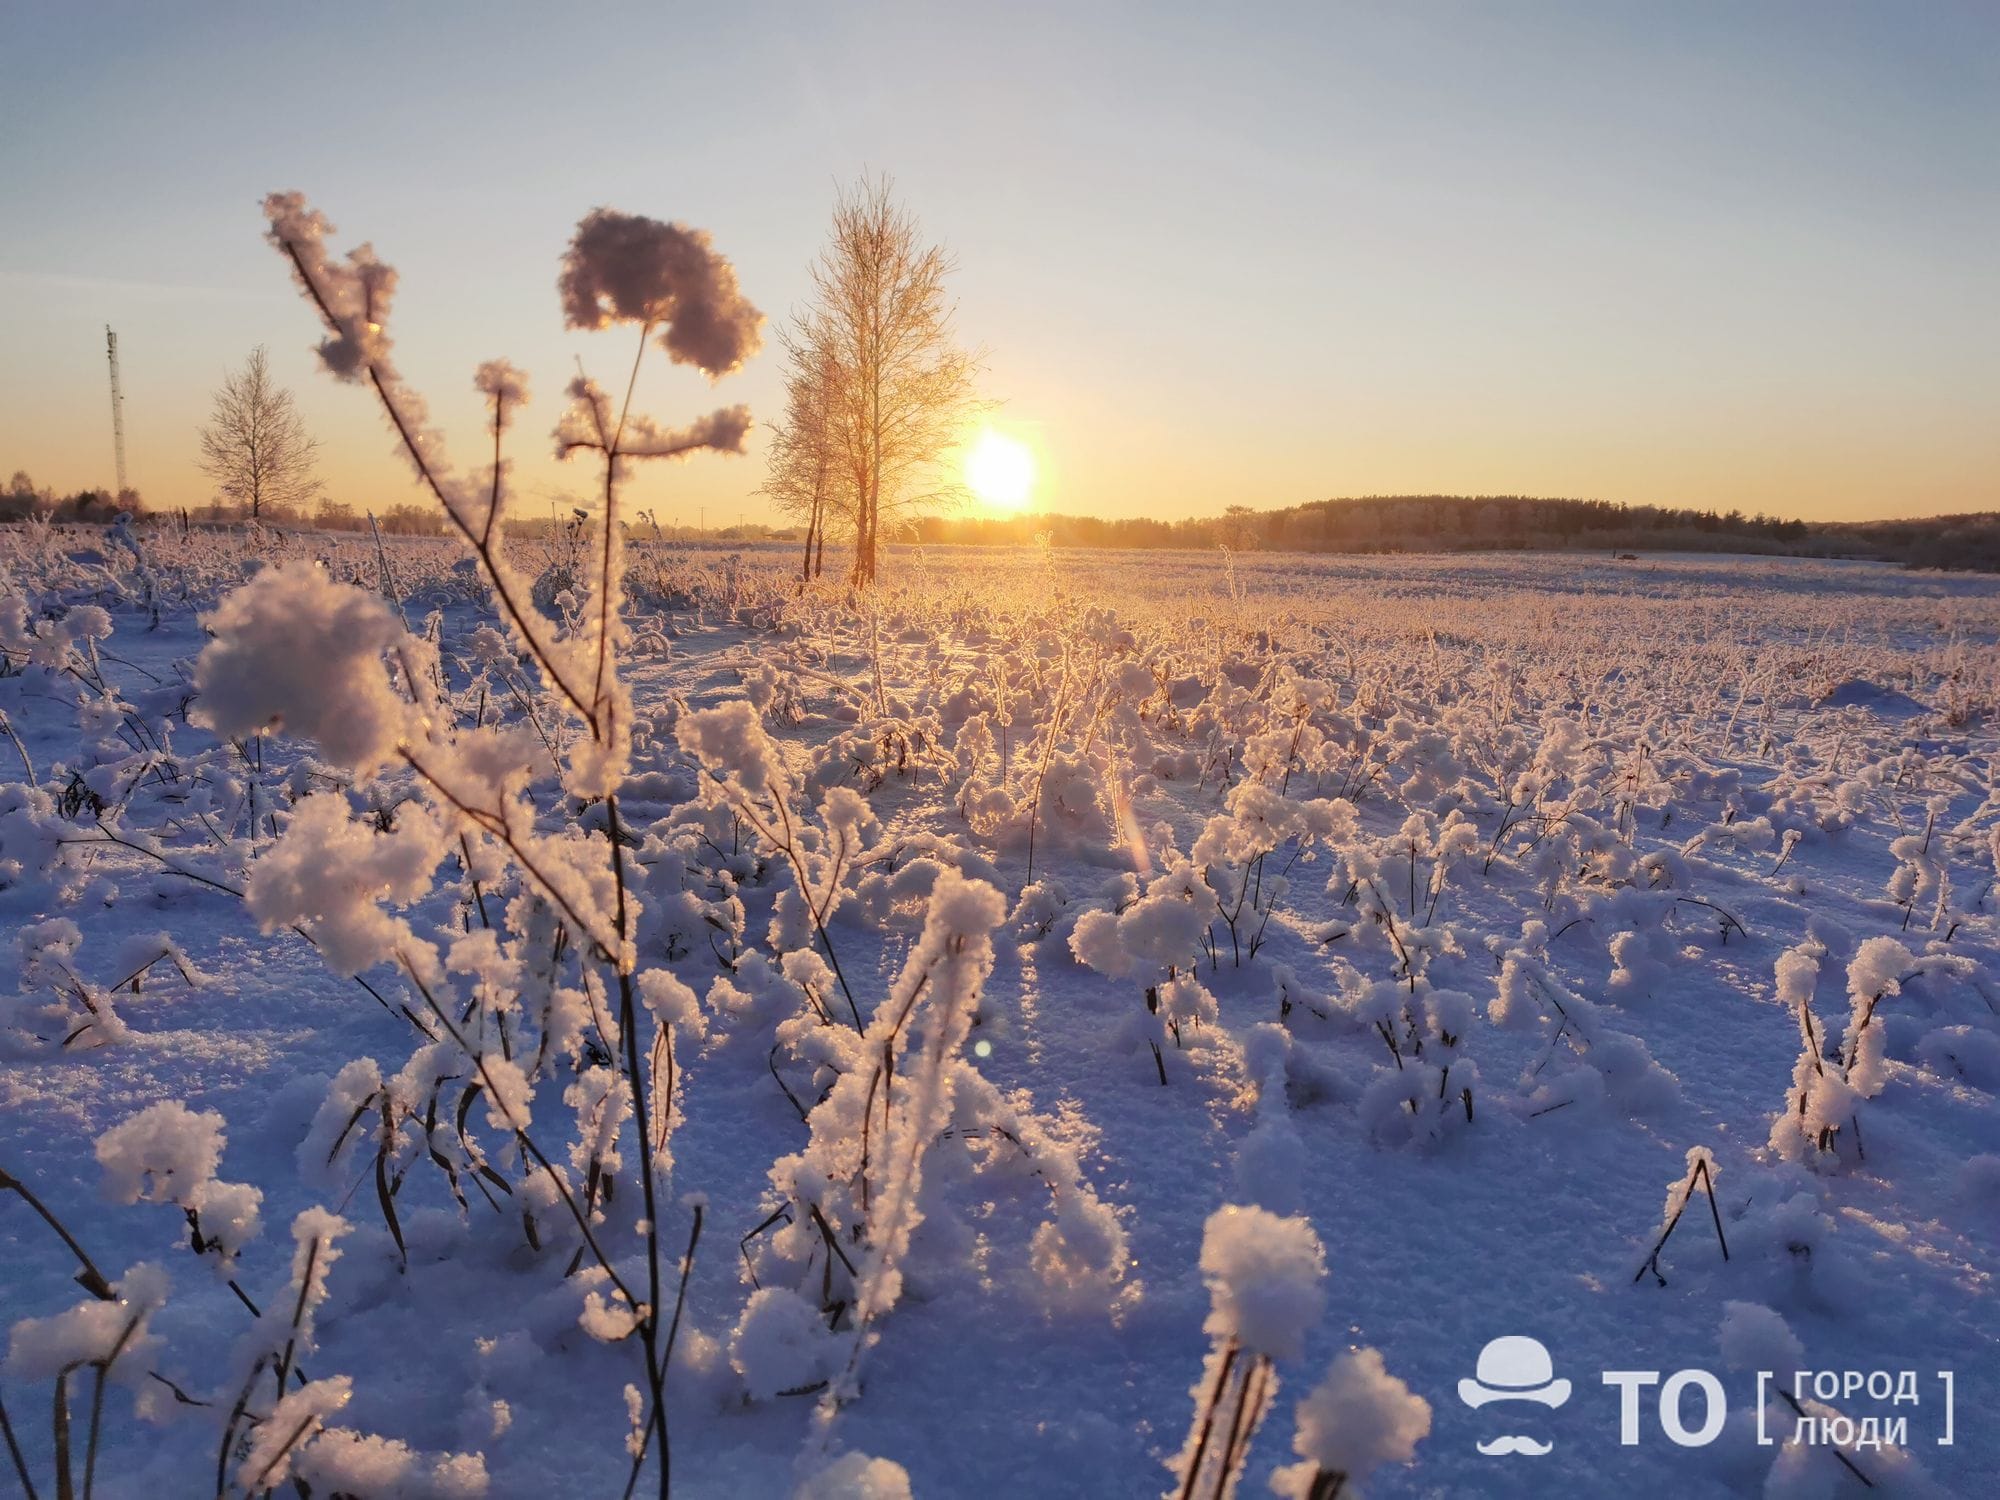 Погода и природа, Стихия в Томске и области, Томские новости, морозы холод аномальные морозы остыли прогноз погоды погода на завтра когда закончатся морозы На днях томичей вновь ожидают аномальные морозы